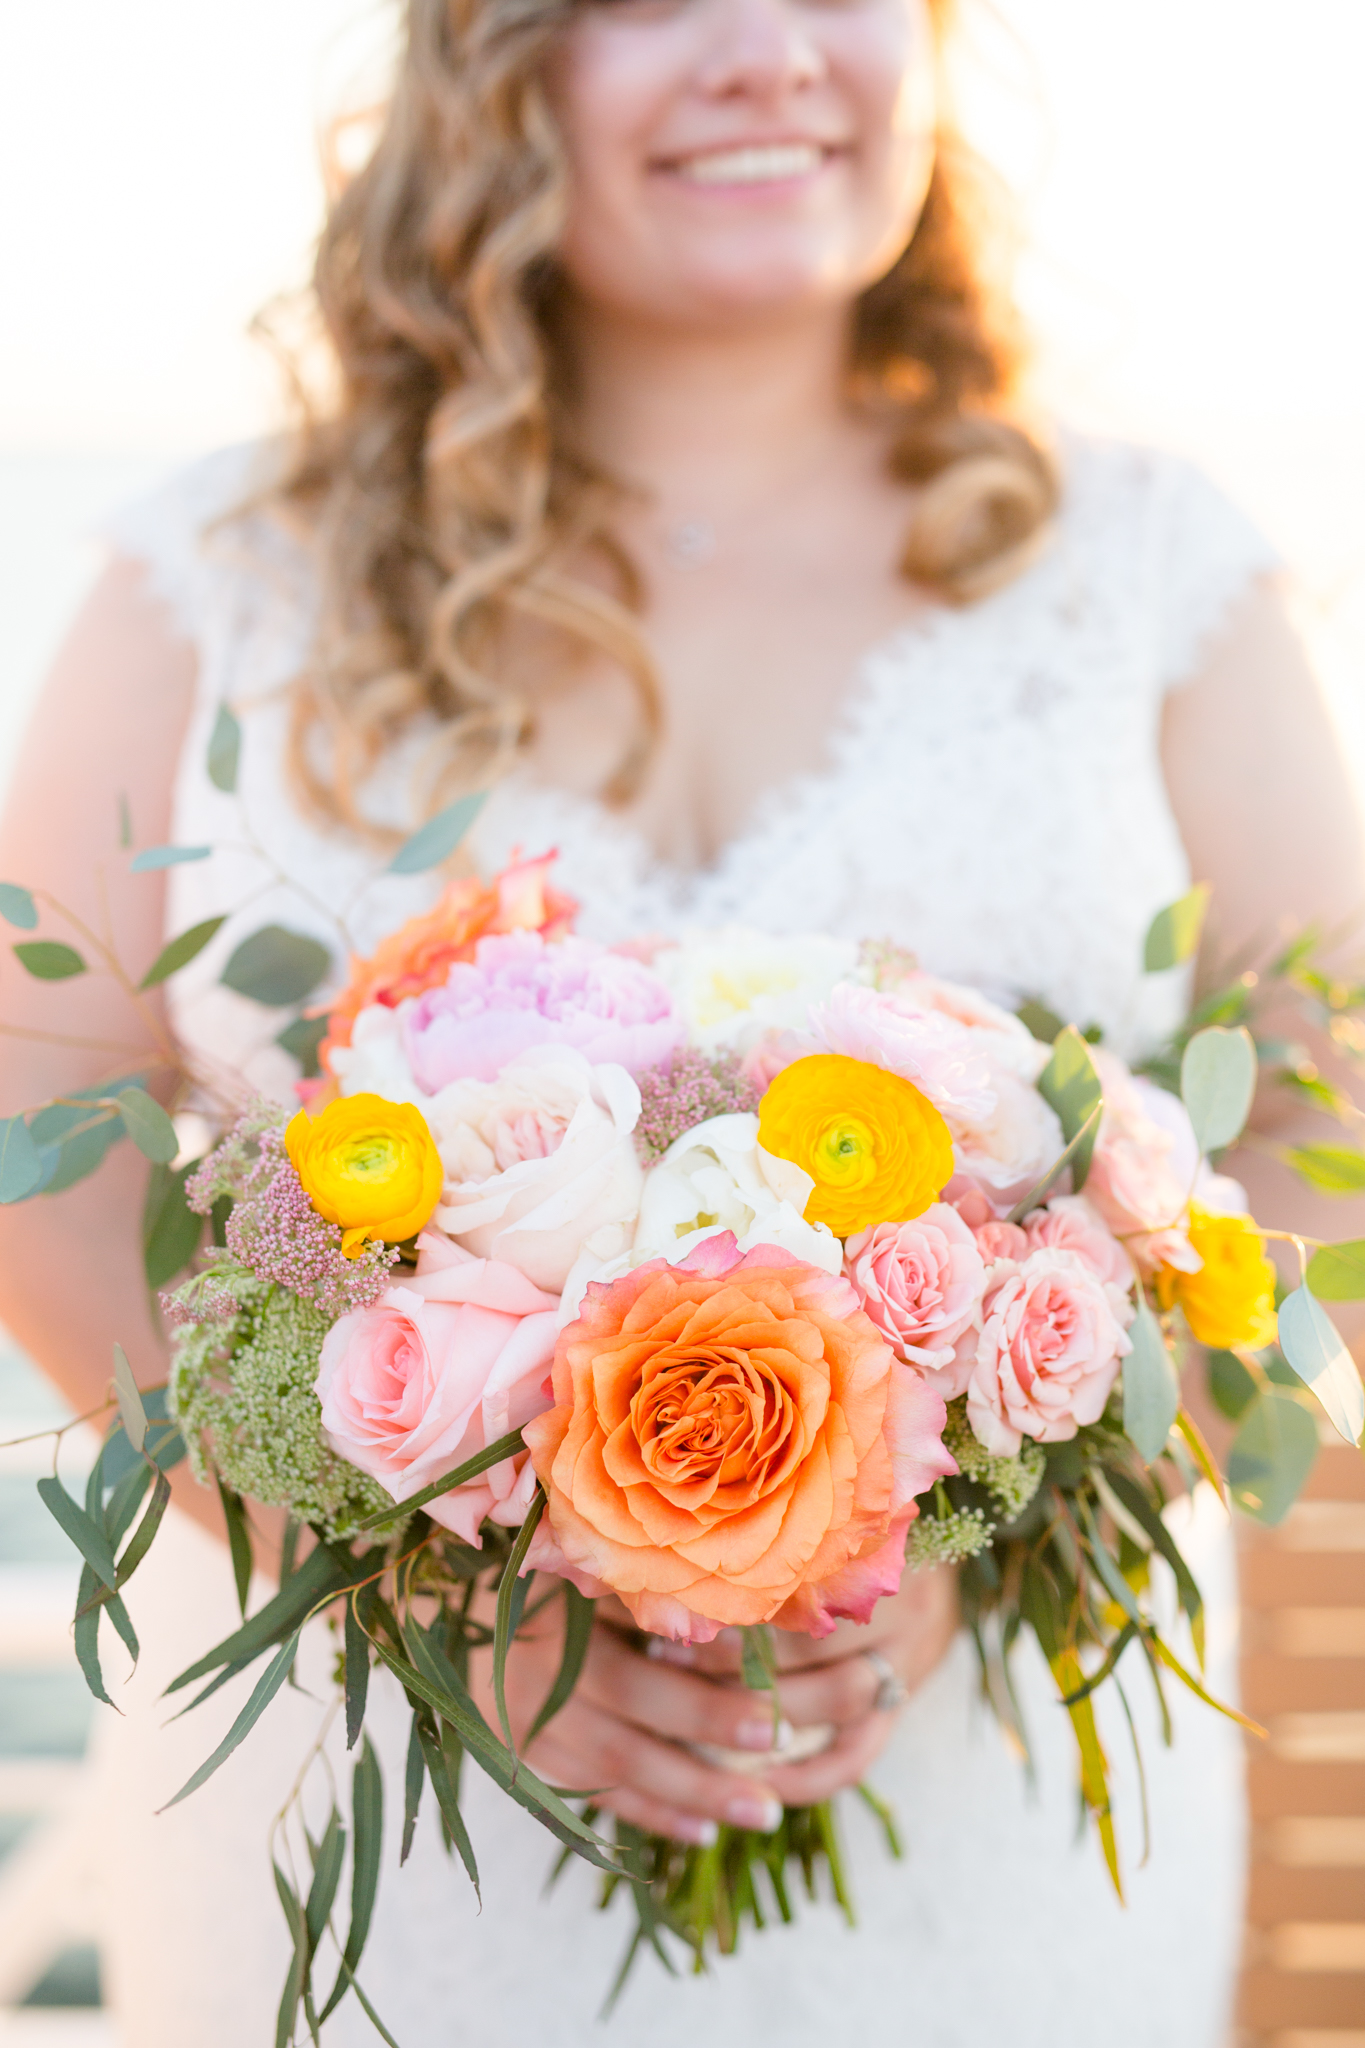 Bride holds wedding florals.